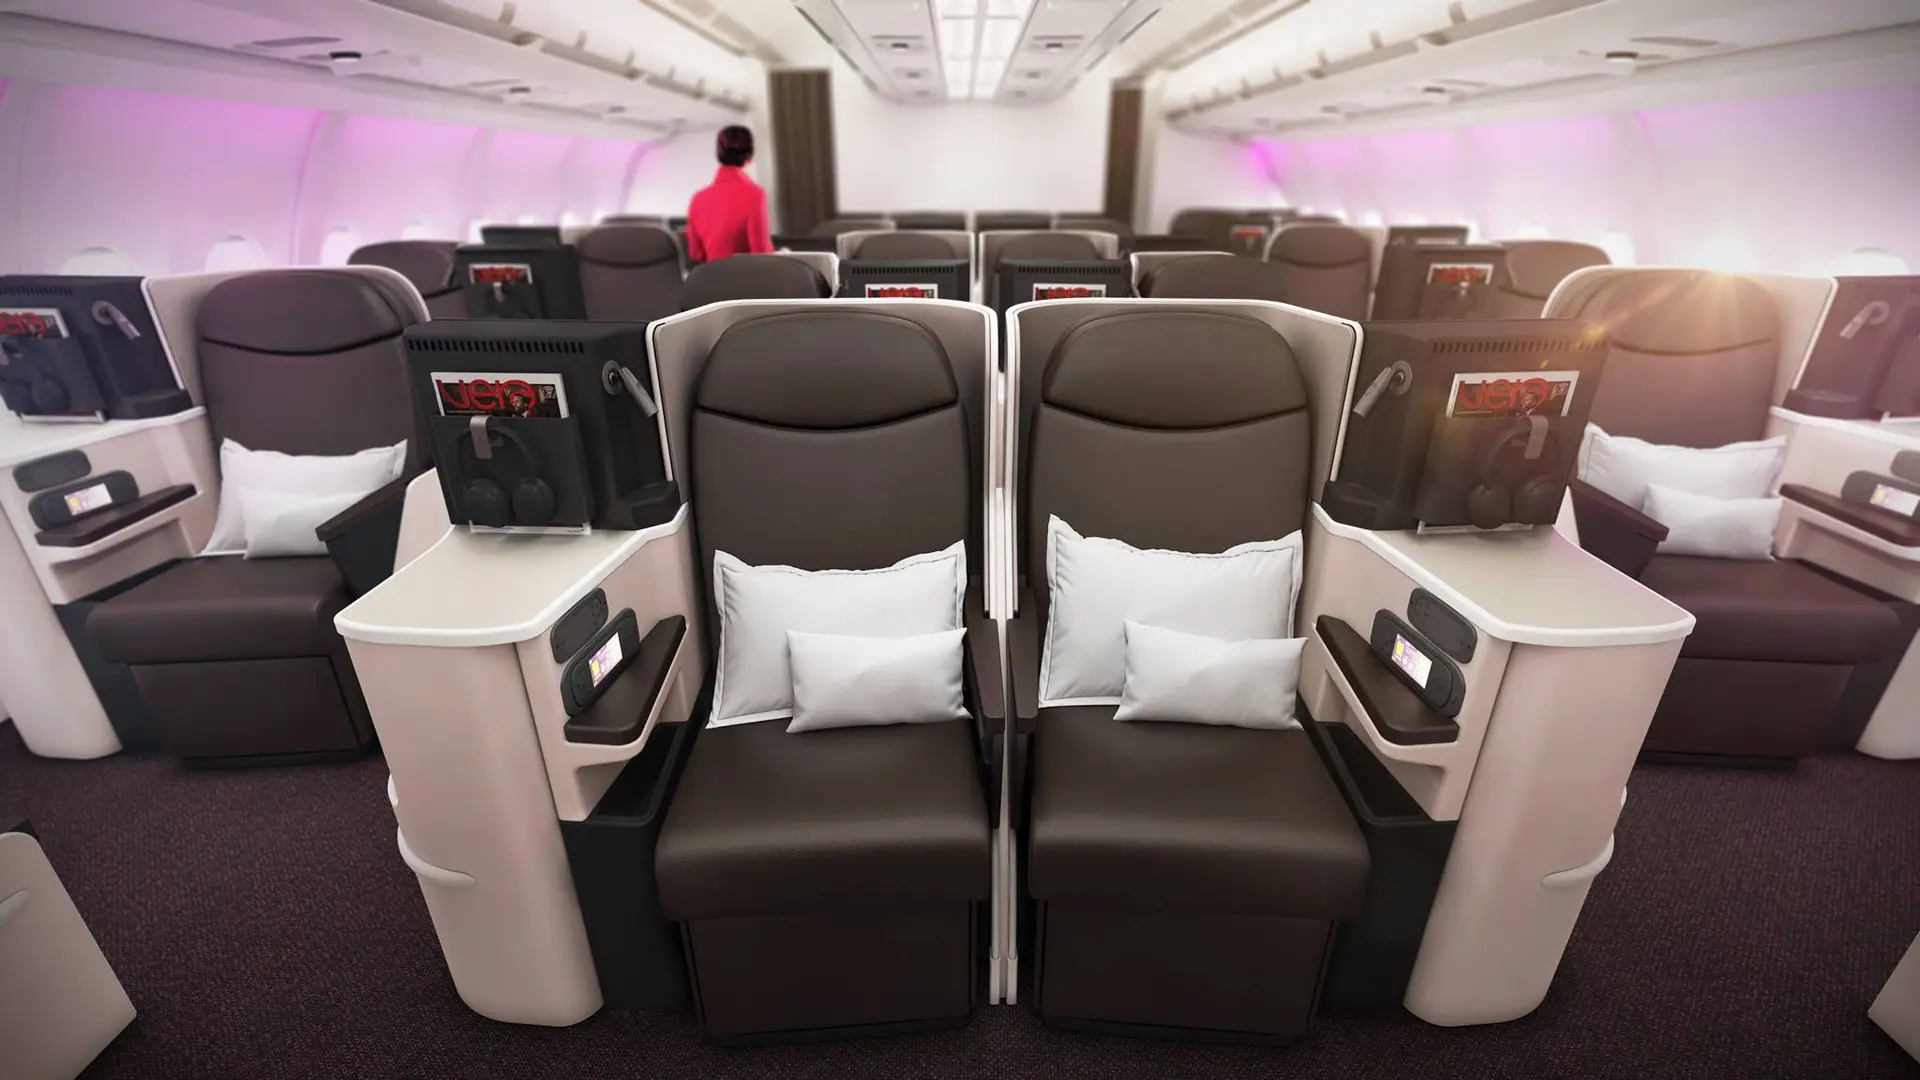 Airline review Cabin & Seat - Virgin Atlantic - 11